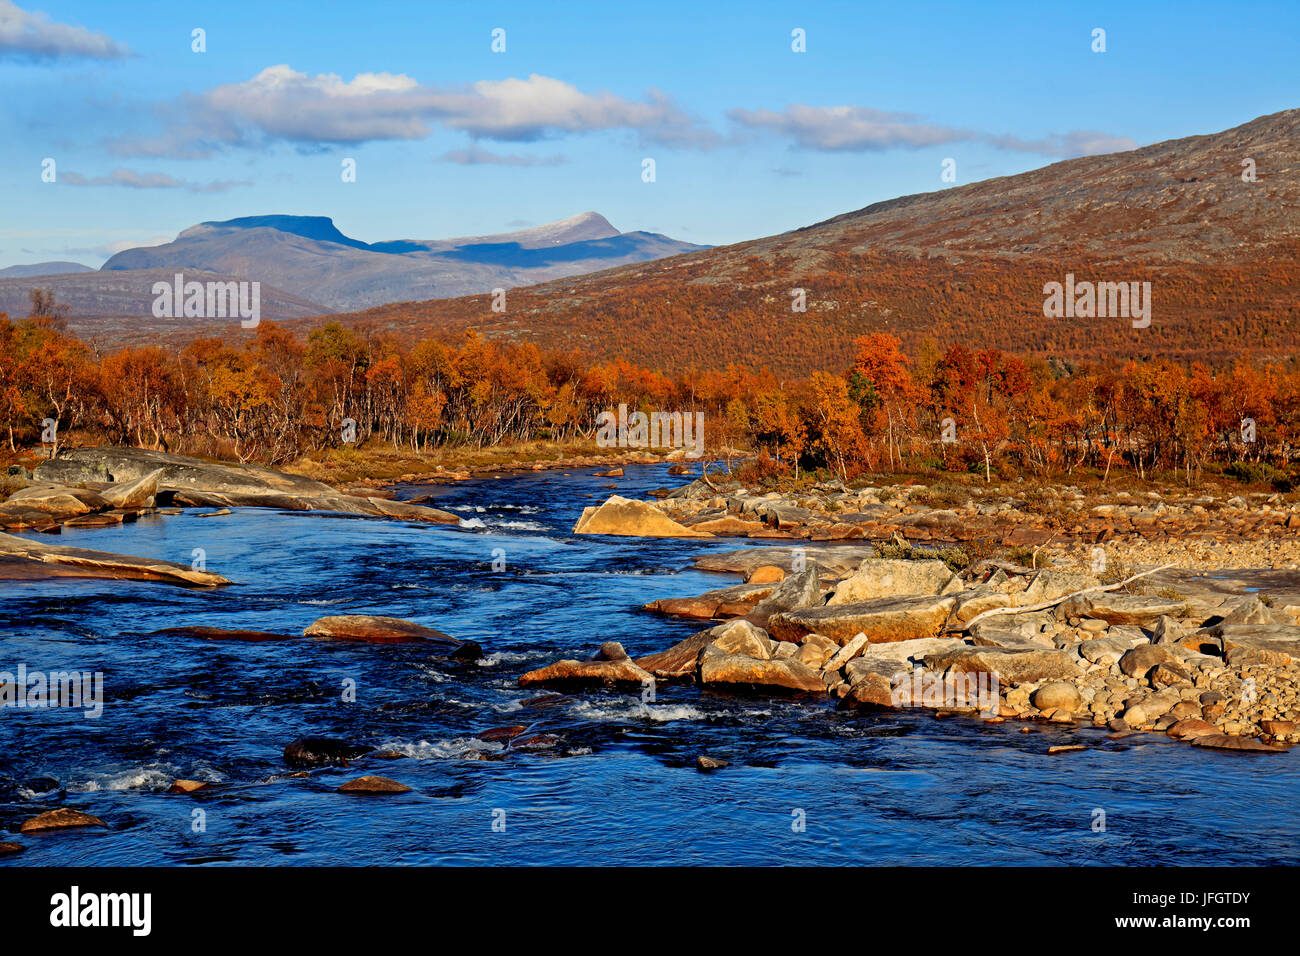 L'Europa, Norvegia, Nordnorwegen, provincia nord del paese, Semska Stodi riserva naturale, il corso di un fiume Foto Stock